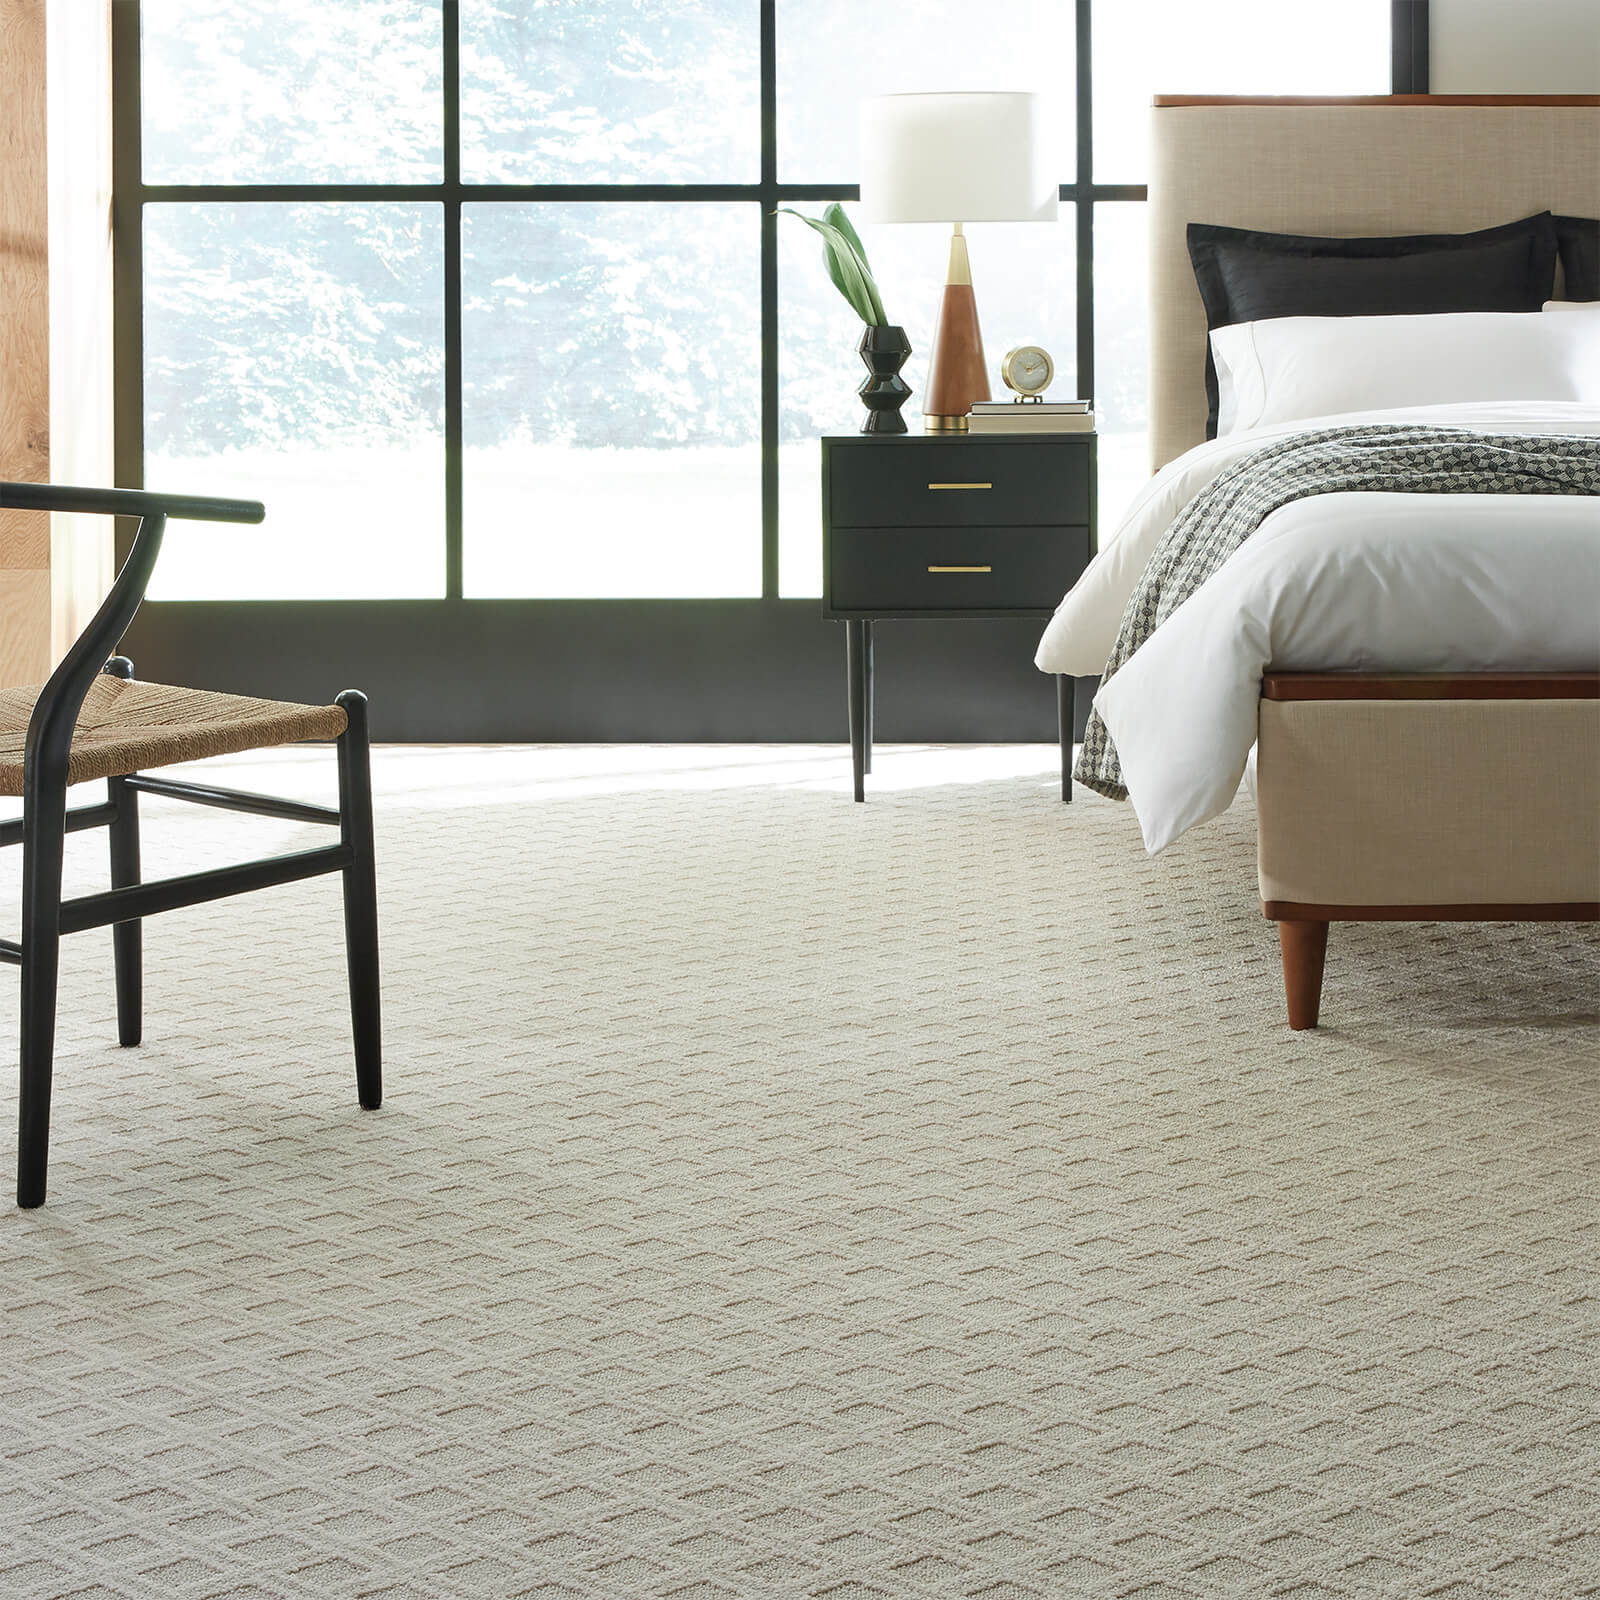 Bedroom carpet | O'Krent Floors